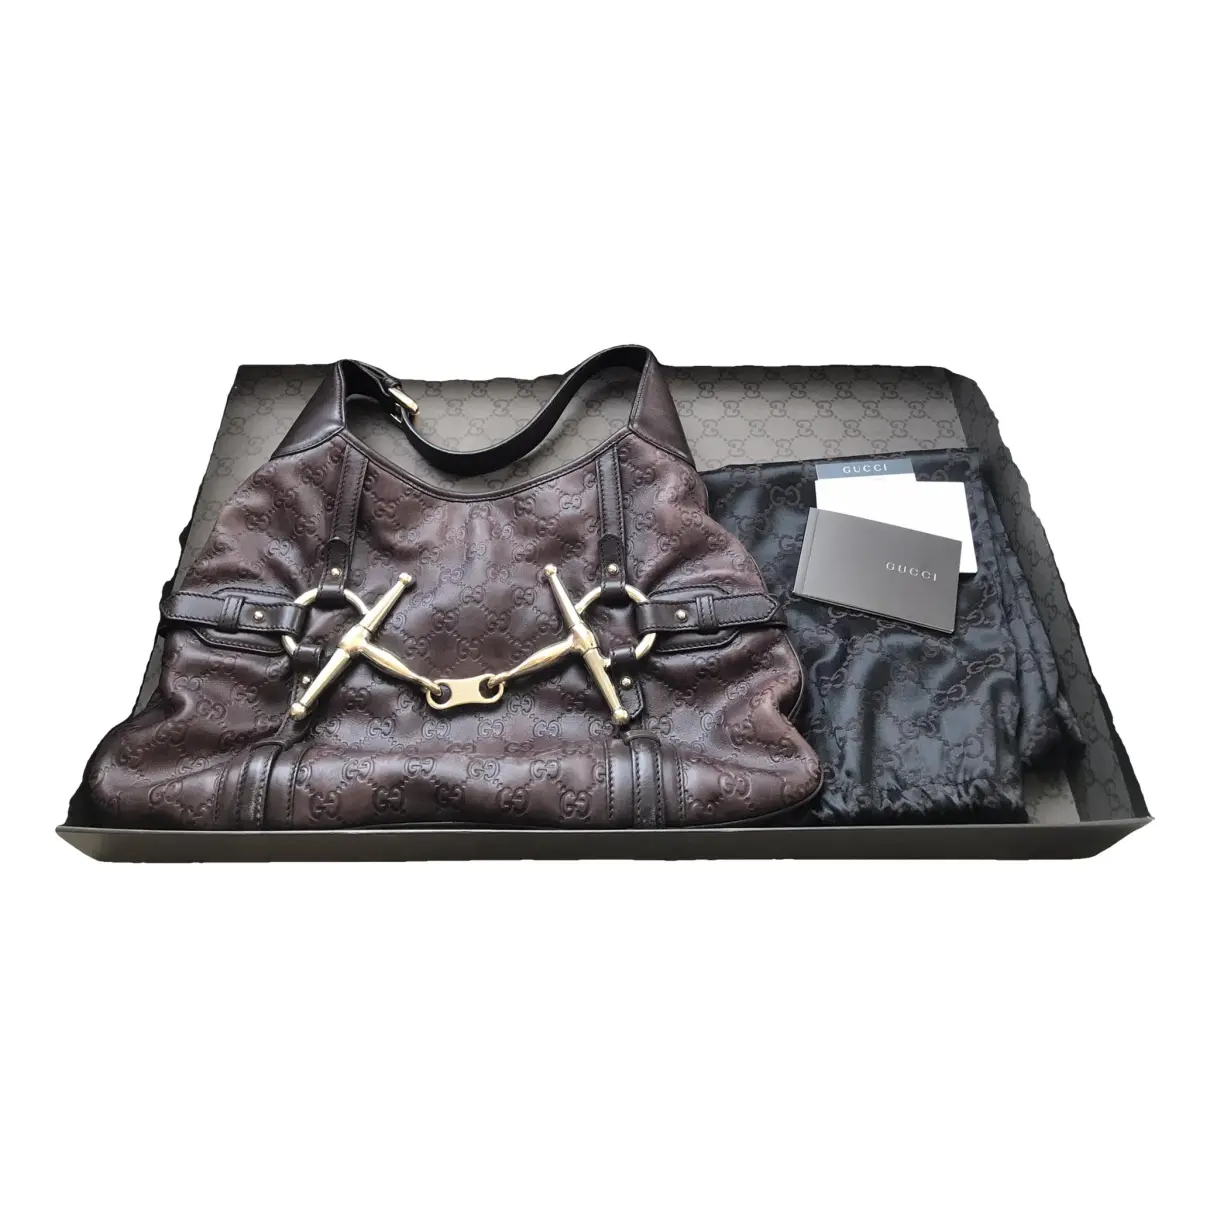 Hobo leather handbag Gucci